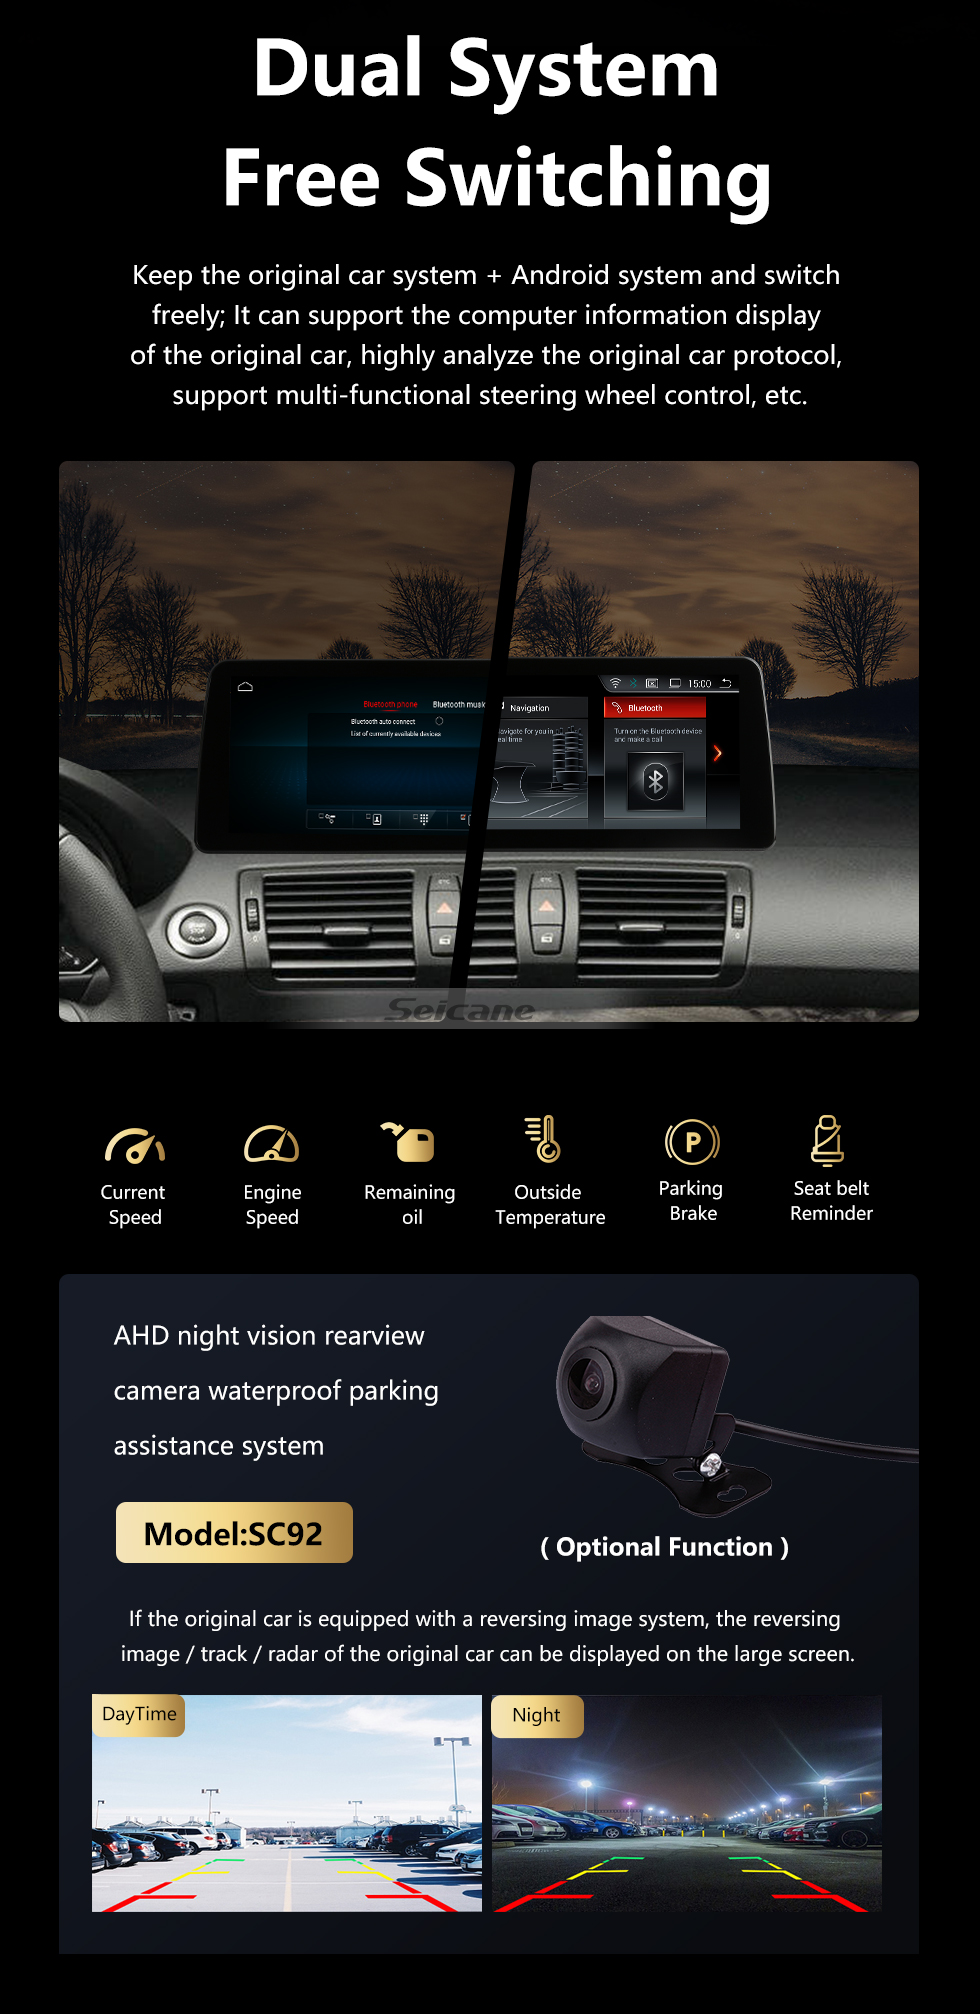 Seicane Android 10.0 para BMW E87 2006-2012 Rádio 10,25 polegadas HD Touchscreen Sistema de navegação GPS com suporte para Bluetooth Carplay SWC